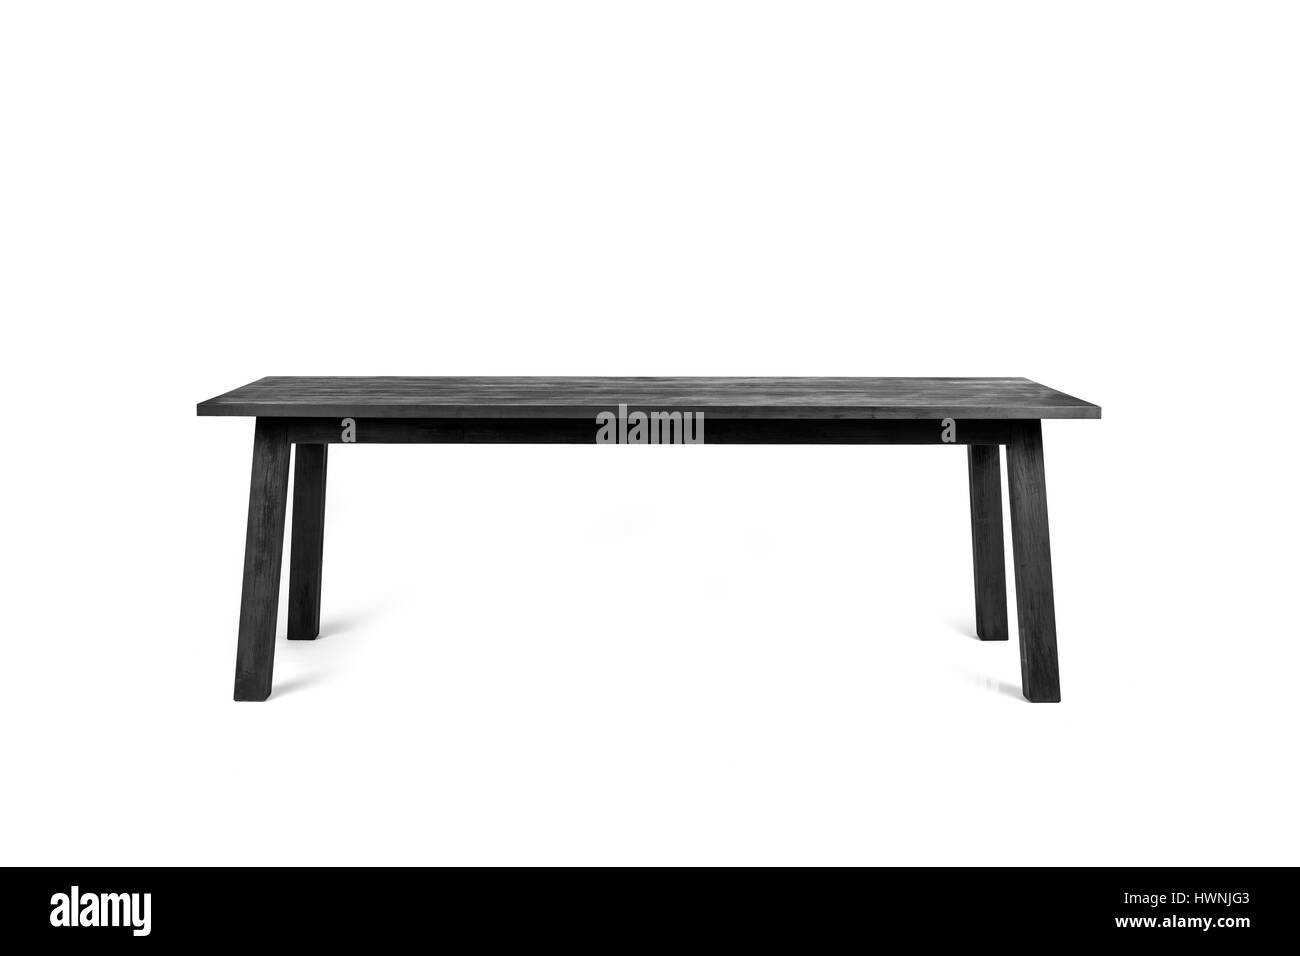 Une table contemporaine - fabriqué à partir de bois carbonisé selon le shou-sugi-ban technique - photographié sur un fond blanc. Banque D'Images